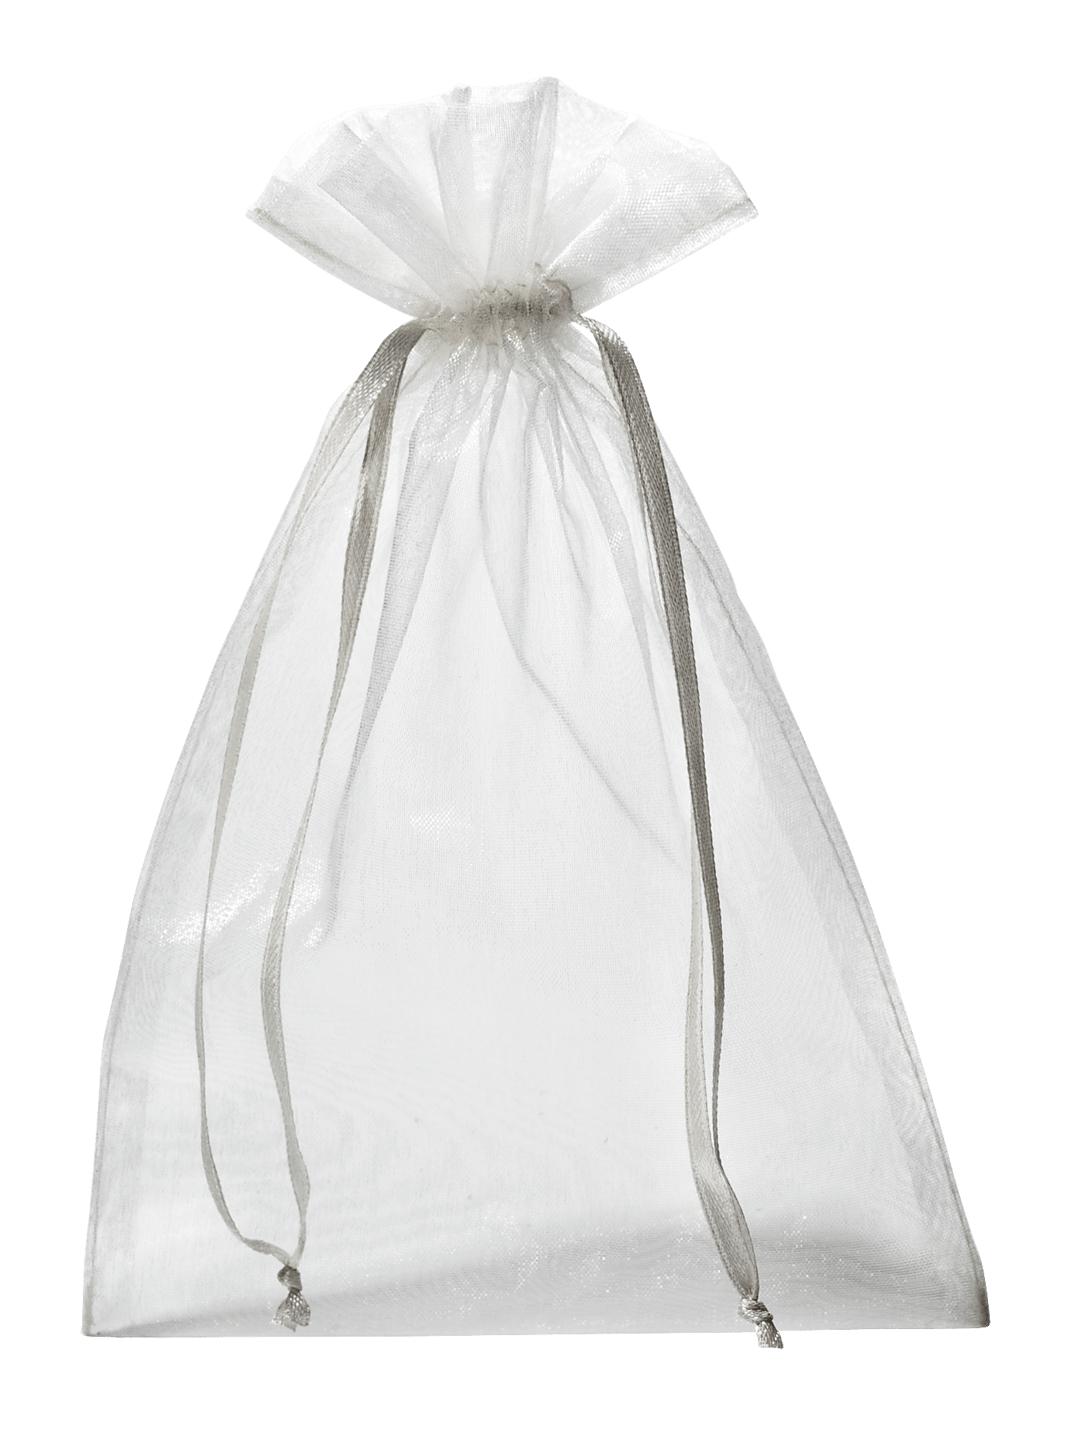 Organza-Säckchen in strahlendem Weiß mit edlem Schimmer